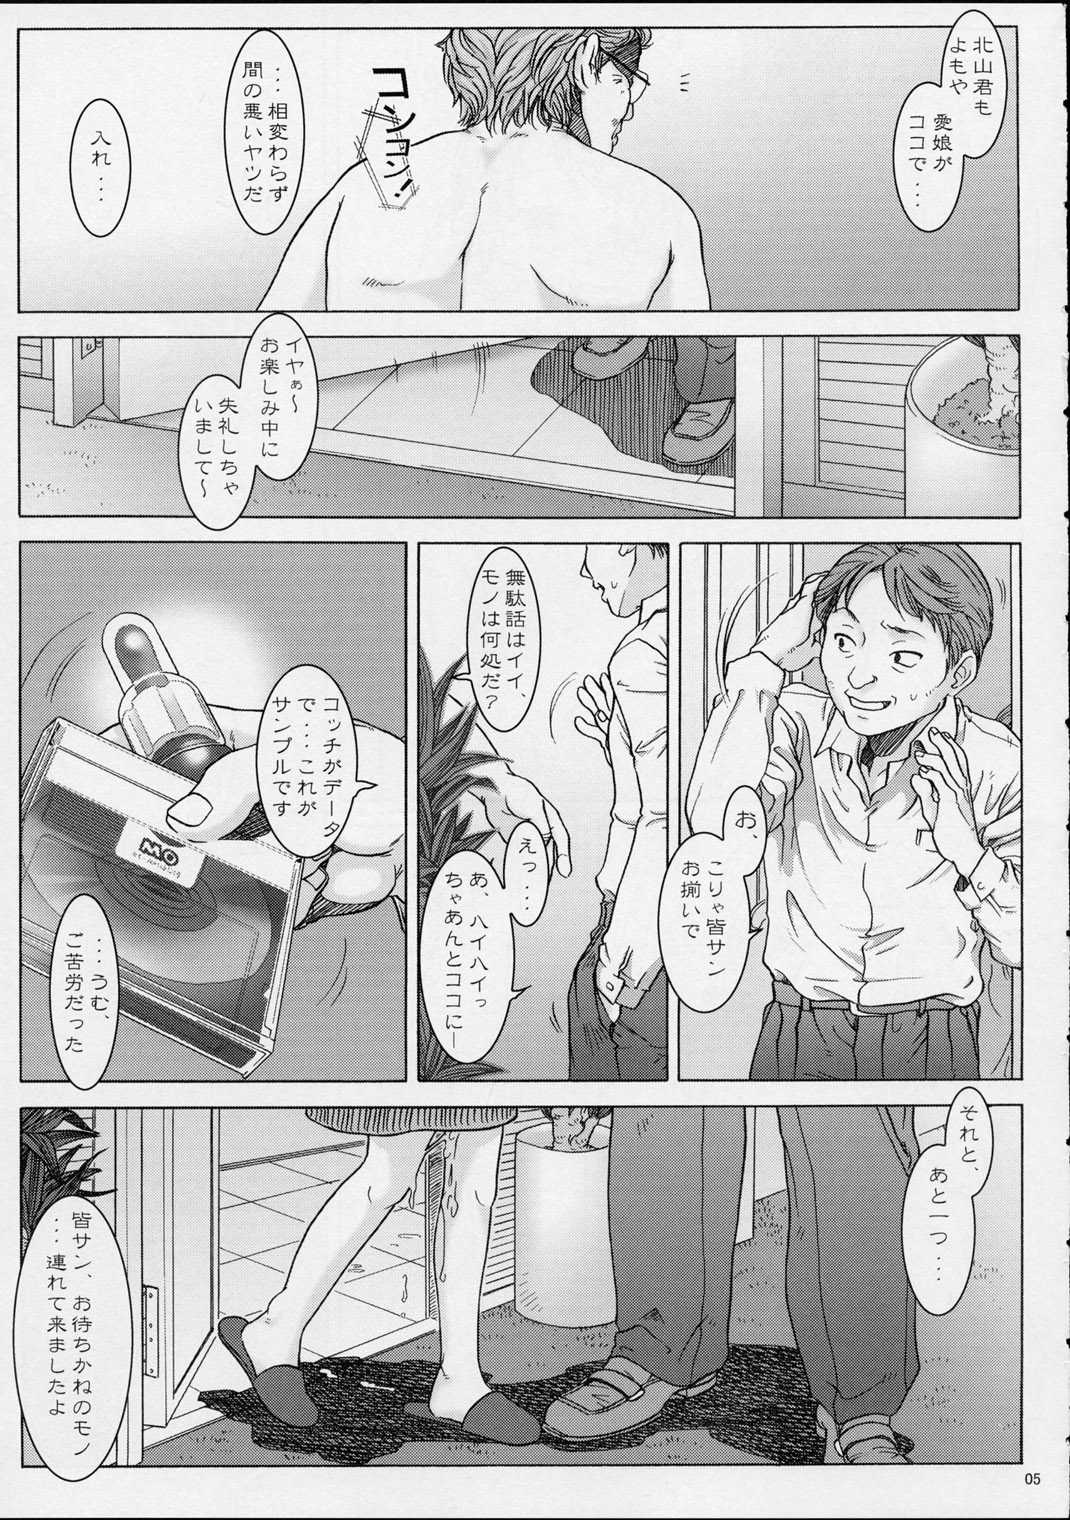 [Otaku Beam] Detention Girl 3 [オタクビーム] 拘禁少女 3